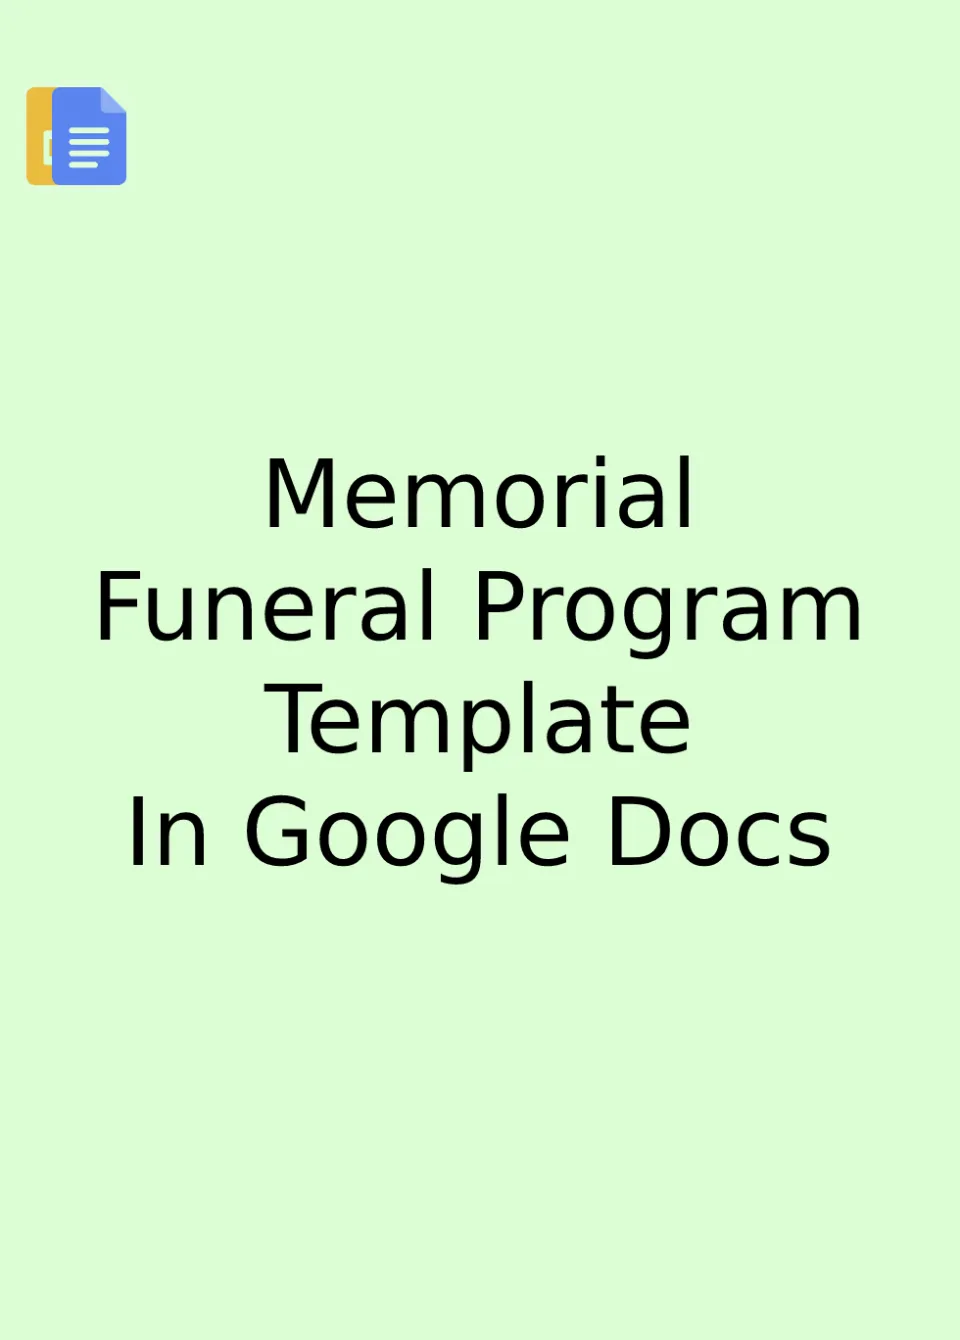 Memorial Funeral Program Template